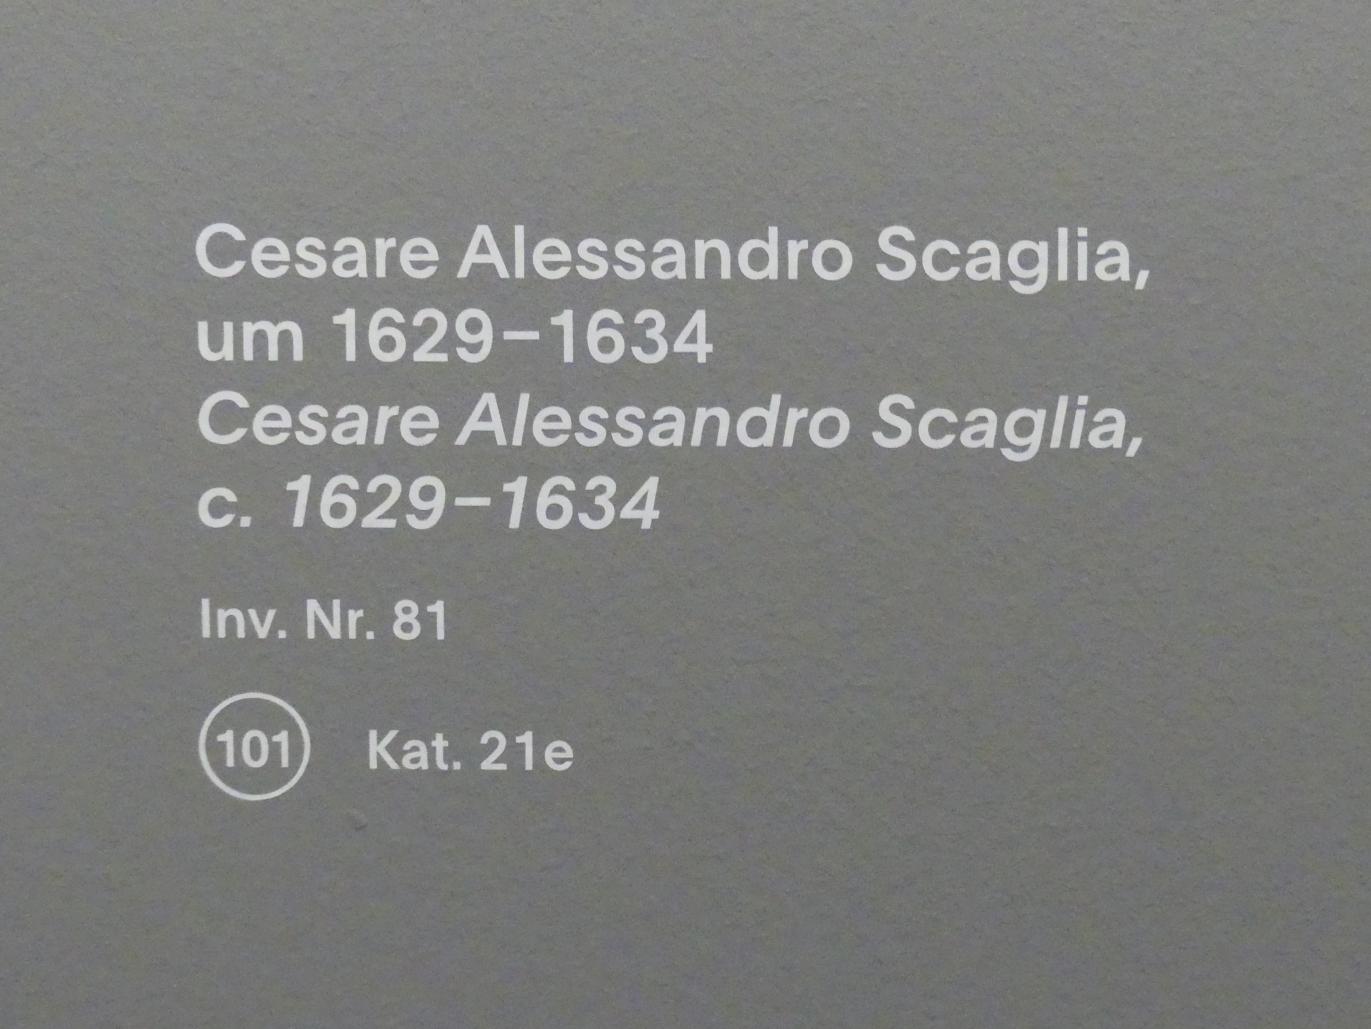 Anthonis (Anton) van Dyck (Werkstatt) (1619–1636), Cesare Alessandro Scaglia, München, Alte Pinakothek, Ausstellung "Van Dyck" vom 25.10.2019-02.02.2020, Die "Ikonographie" - 2, um 1629–1634, Bild 2/2